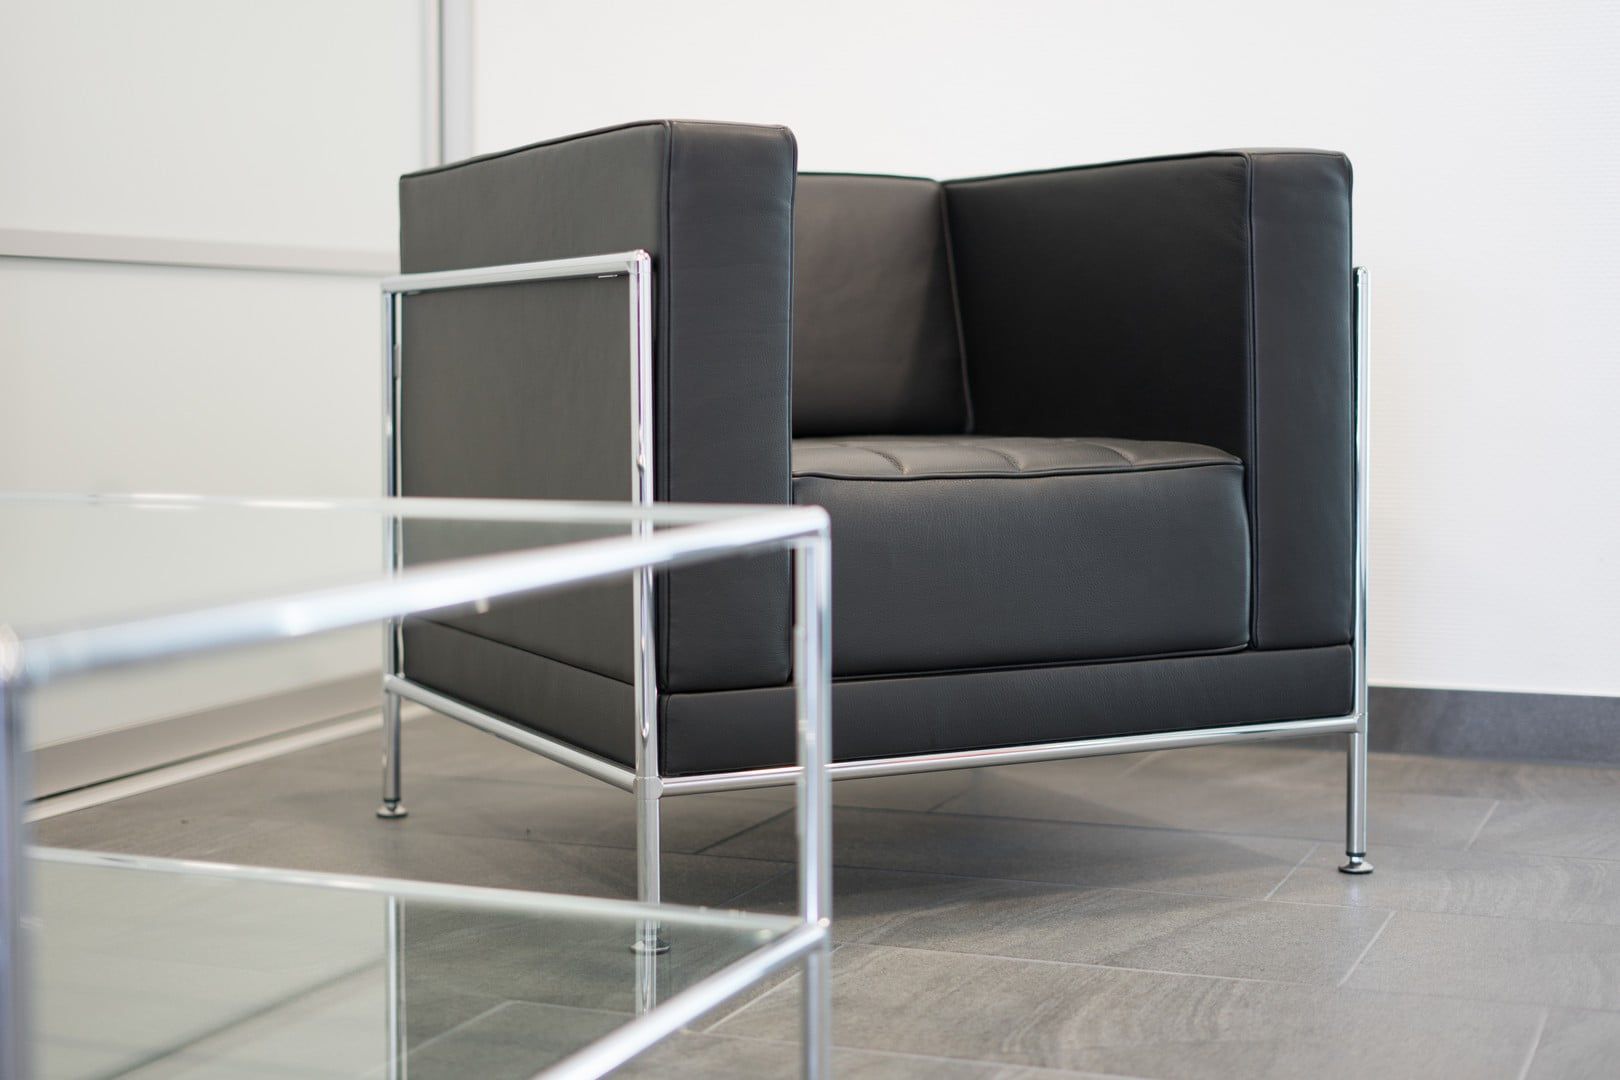 Sessel mit schlanker Linie und elegantem Design kombiniert mit einem Glastisch